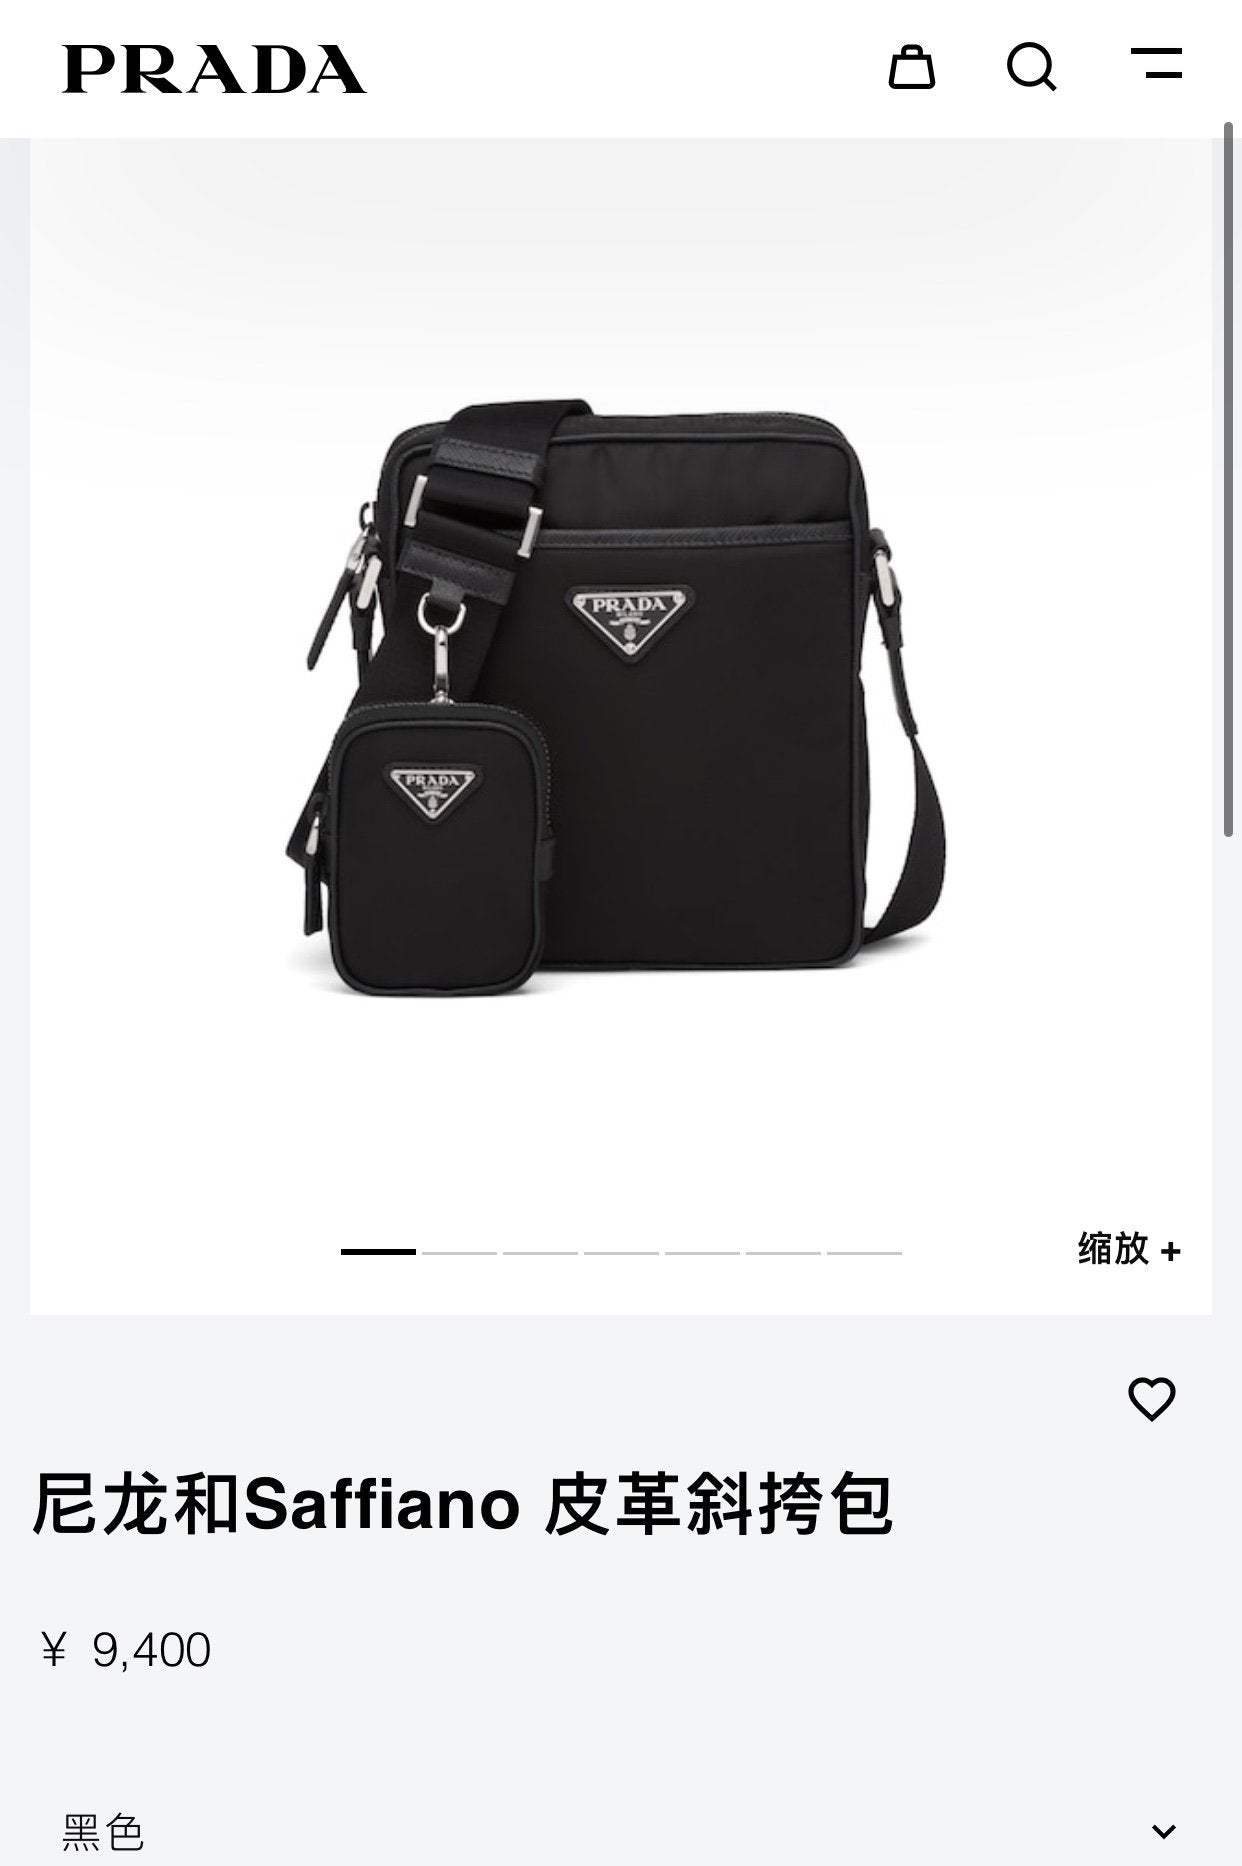 prada women leather shoulder bags satchel tote bag handbag 1